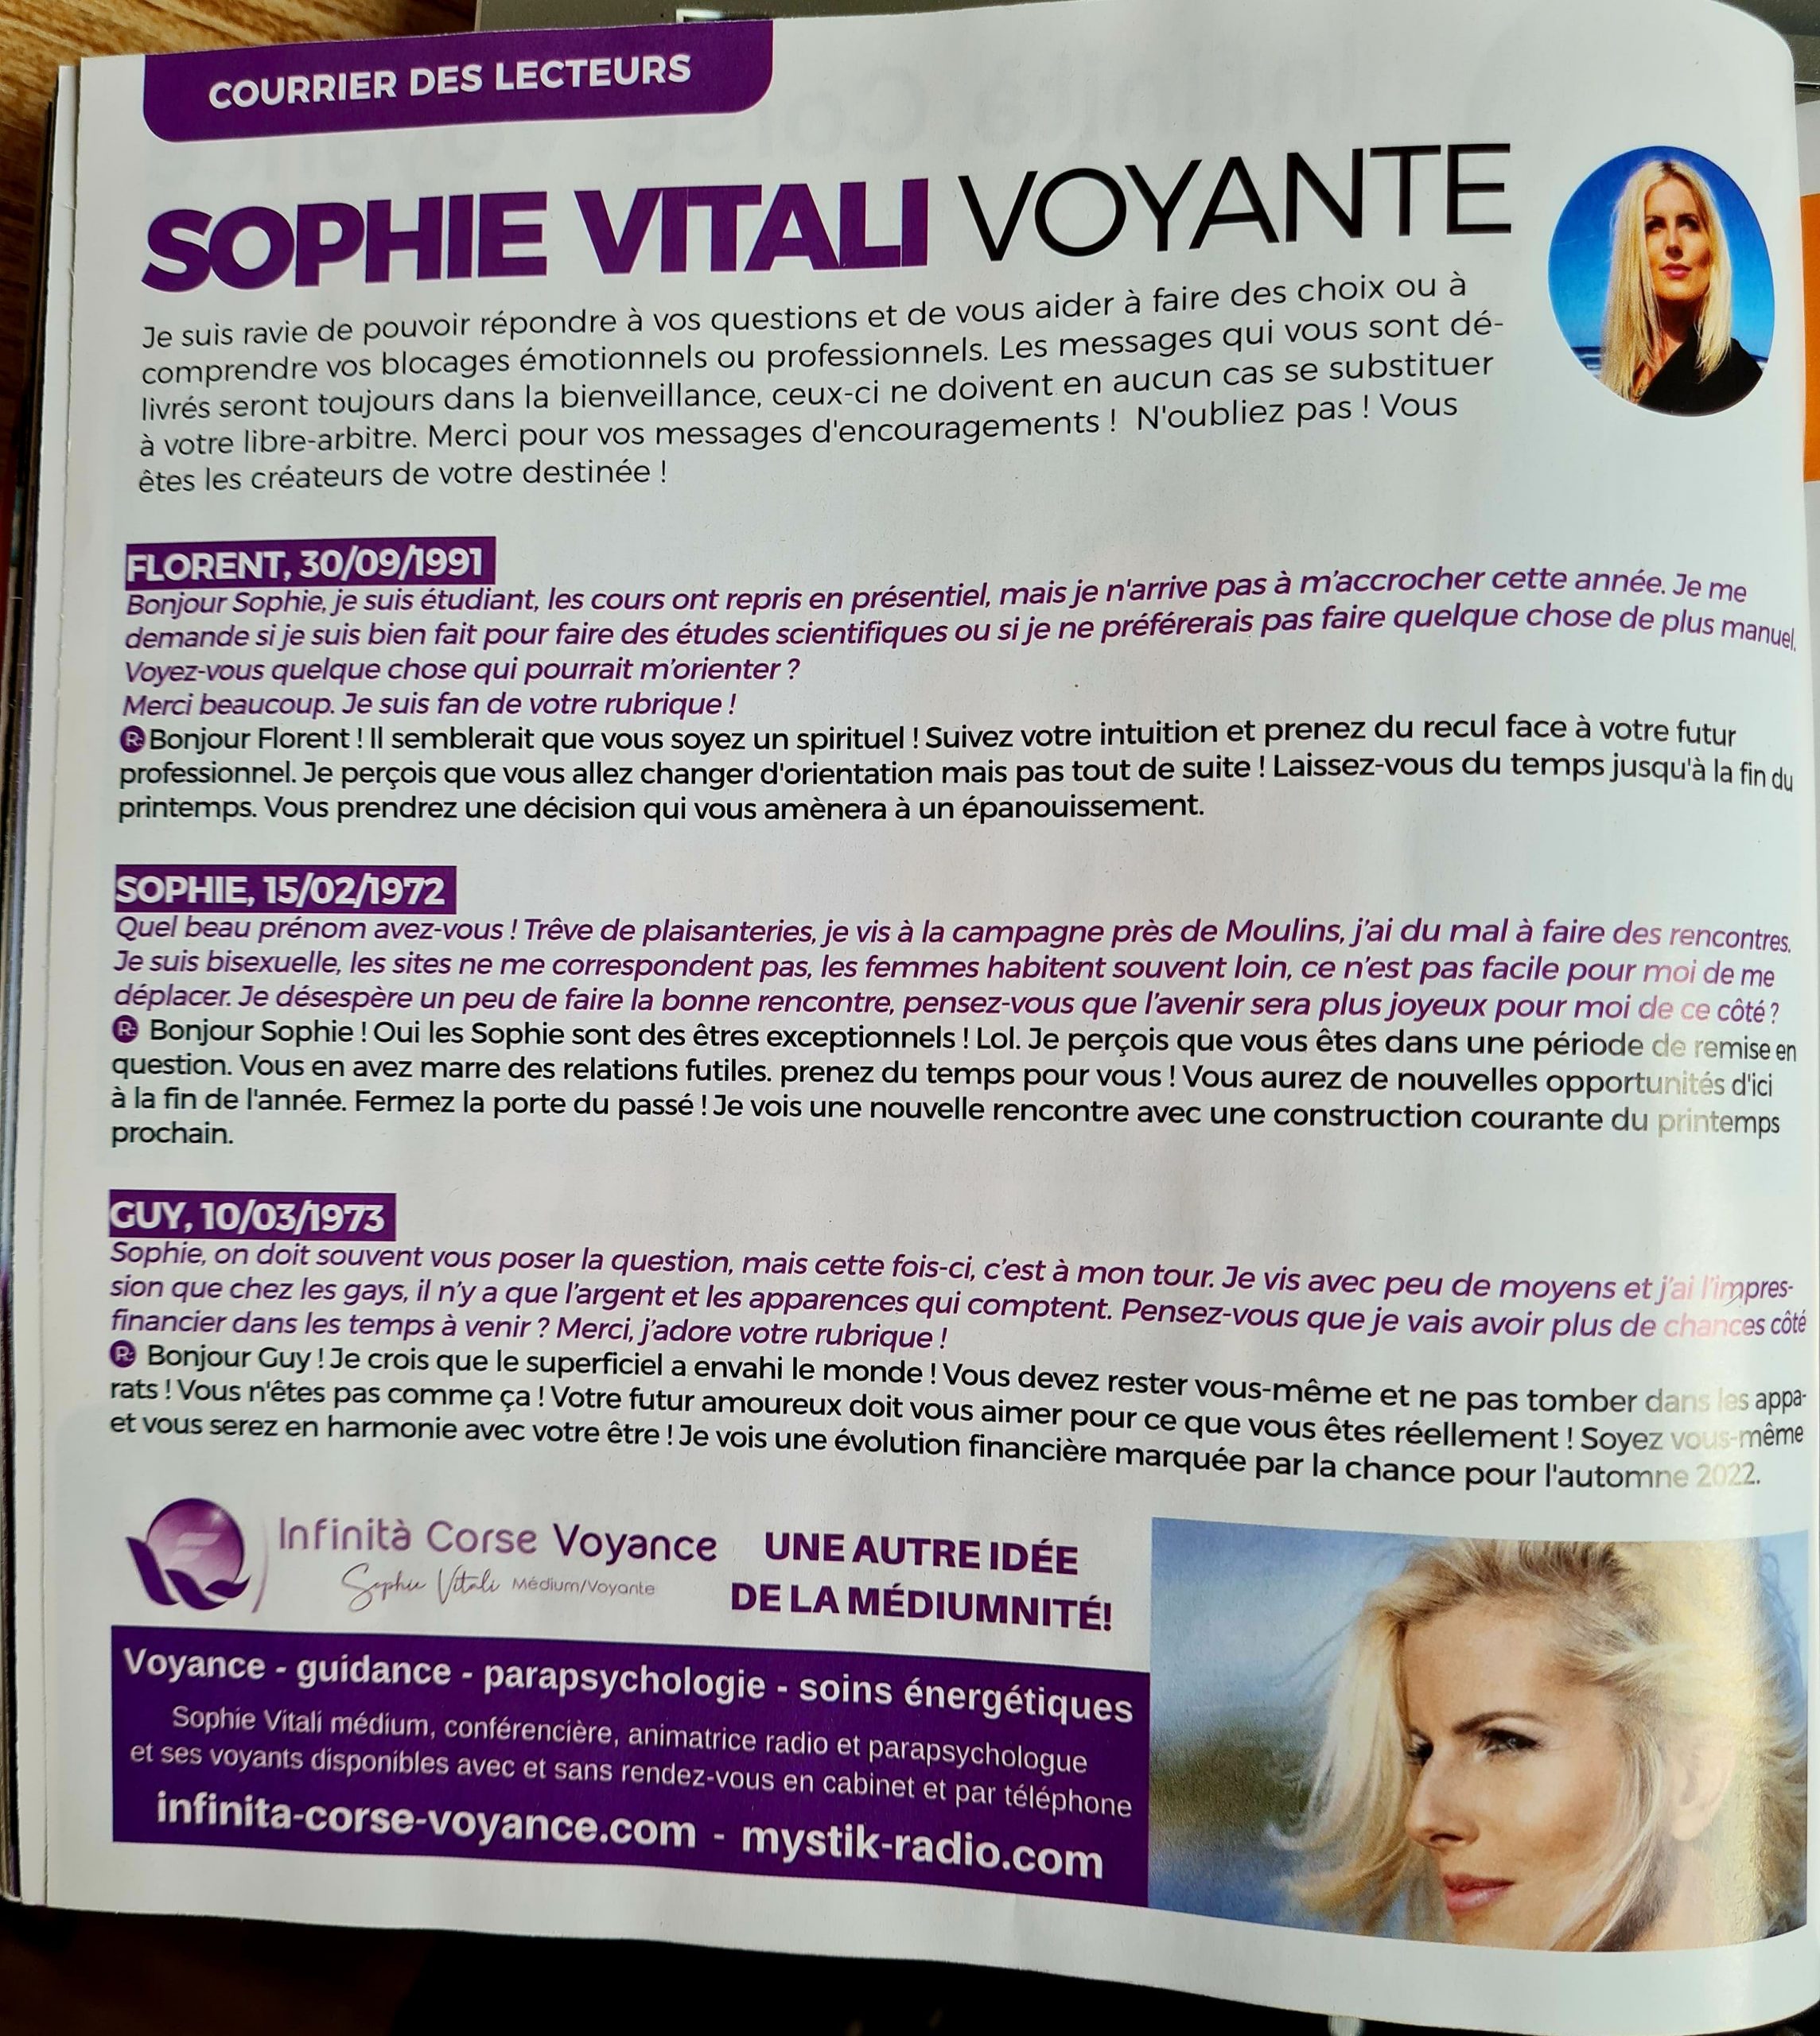 Qweek Magazine : Sophie Vitali répond à vos questions dans le courrier des lecteurs